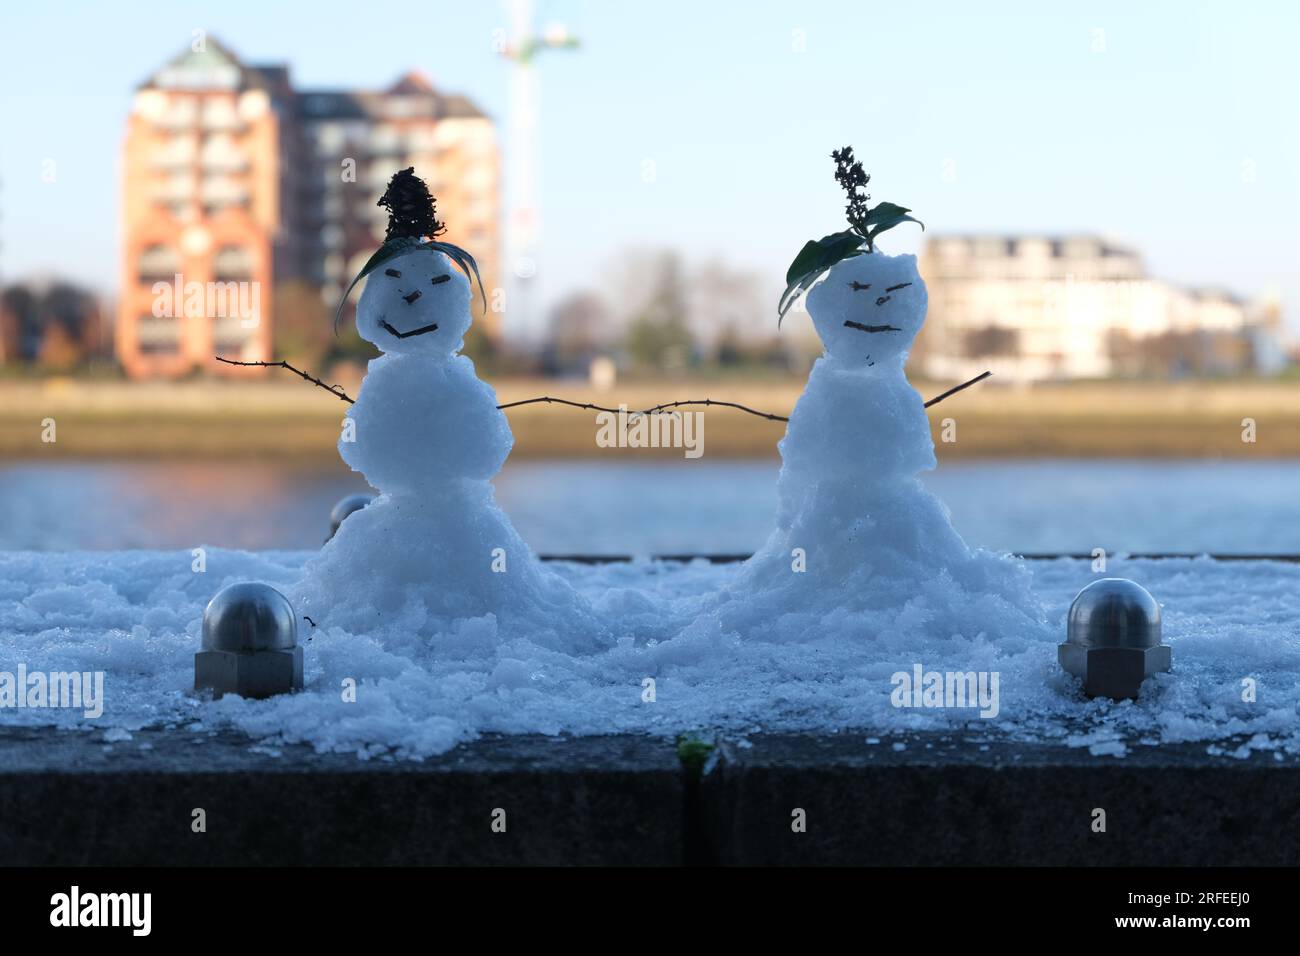 Deux bonhommes de neige dans une scène hivernale et enneigée. La Tamise en arrière-plan. Une belle image romantique avec un look doux et une qualité rêveuse. Banque D'Images